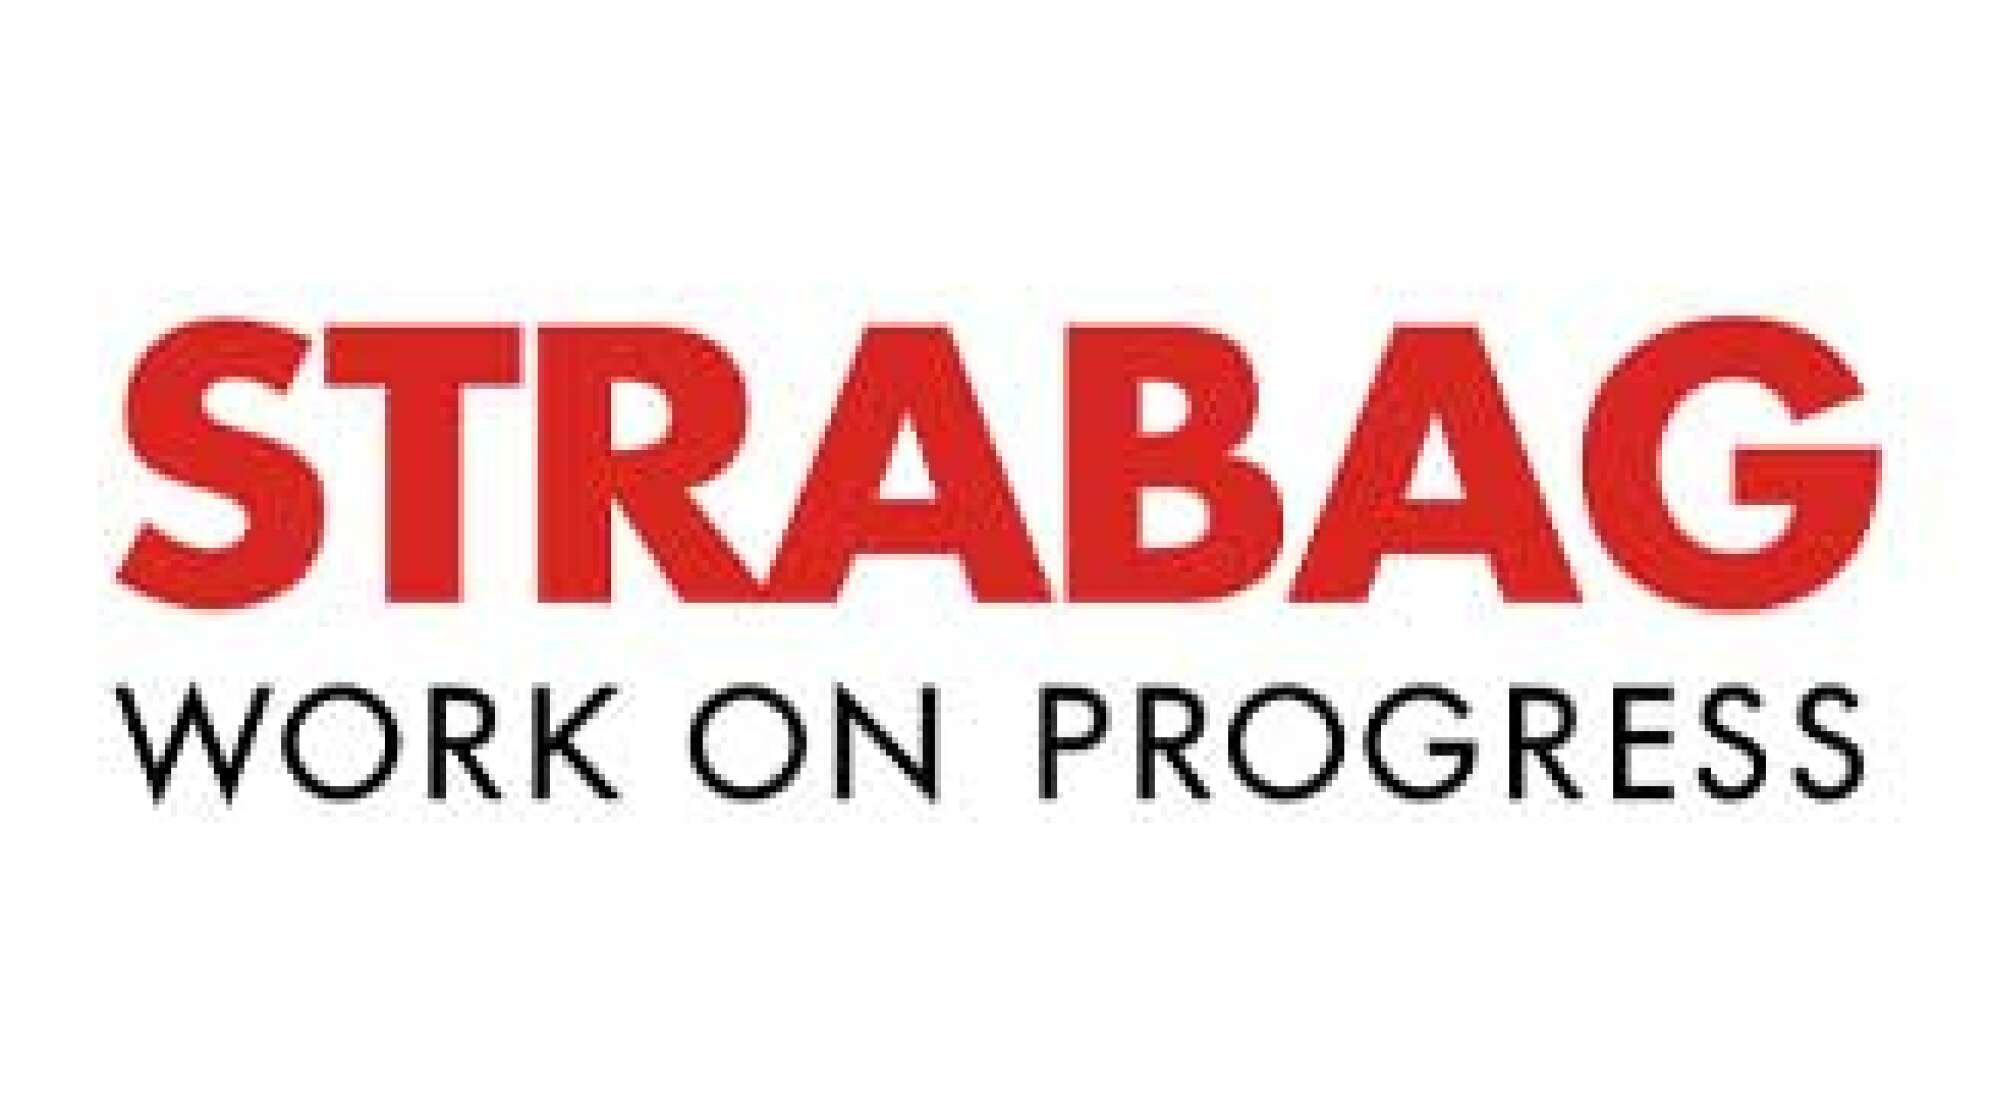 Das Logo der Firma STRABAG - rote Schrift auf weißem Grund: "Strabag", darunter in schwarzer Schrift: "Work on Progress".